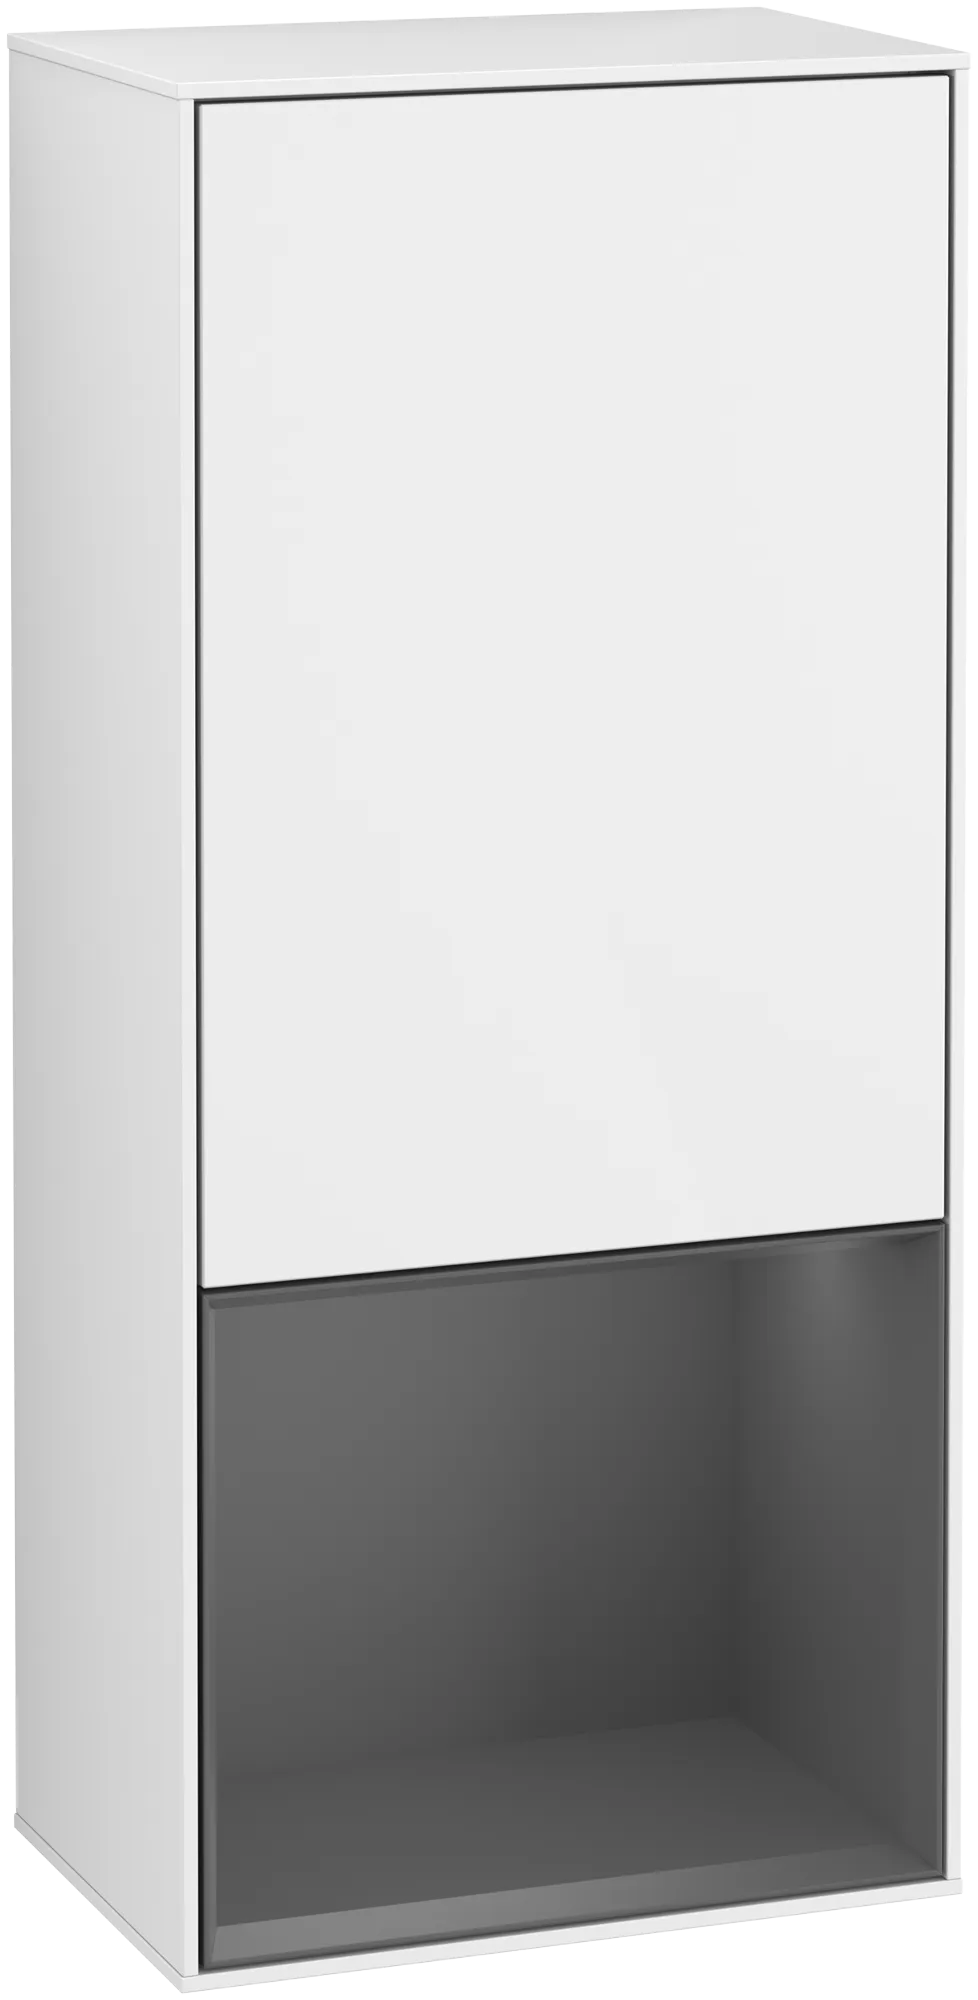 Bild von VILLEROY BOCH Finion Seitenschrank, mit Beleuchtung, 1 Tür, 418 x 936 x 270 mm, Glossy White Lacquer / Anthracite Matt Lacquer #G550GKGF